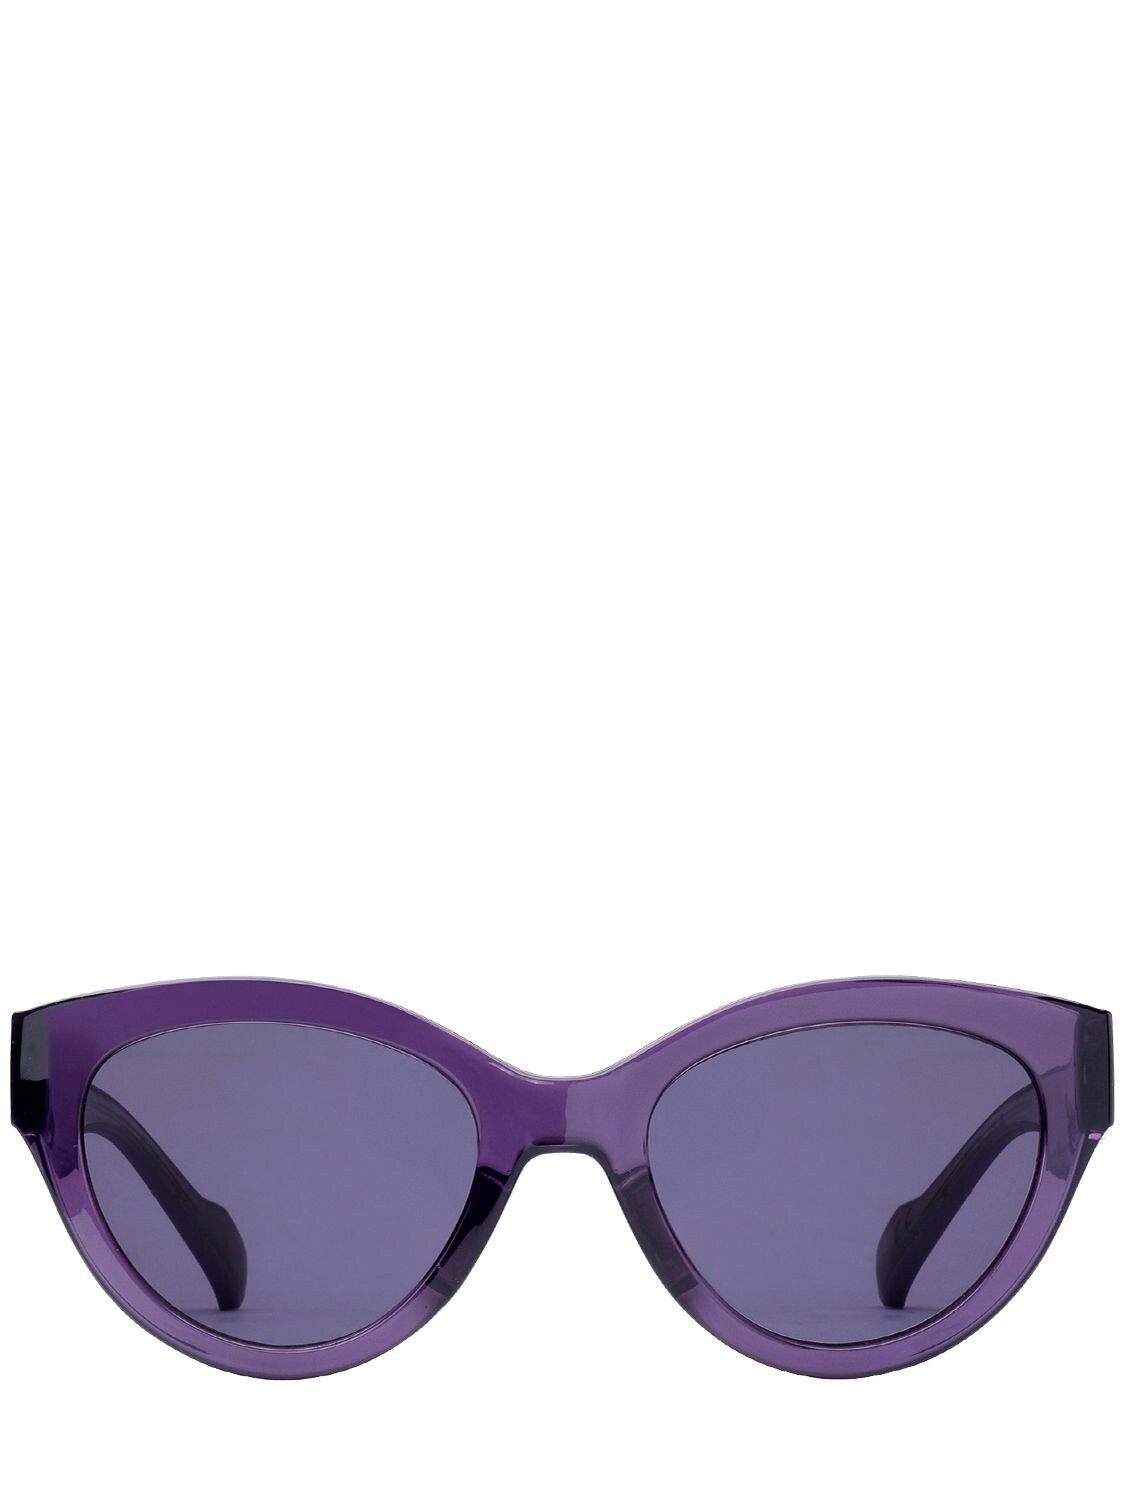 Adidas Originals By Italia Independent Acetate Cat-eye Sunglasses In Violet